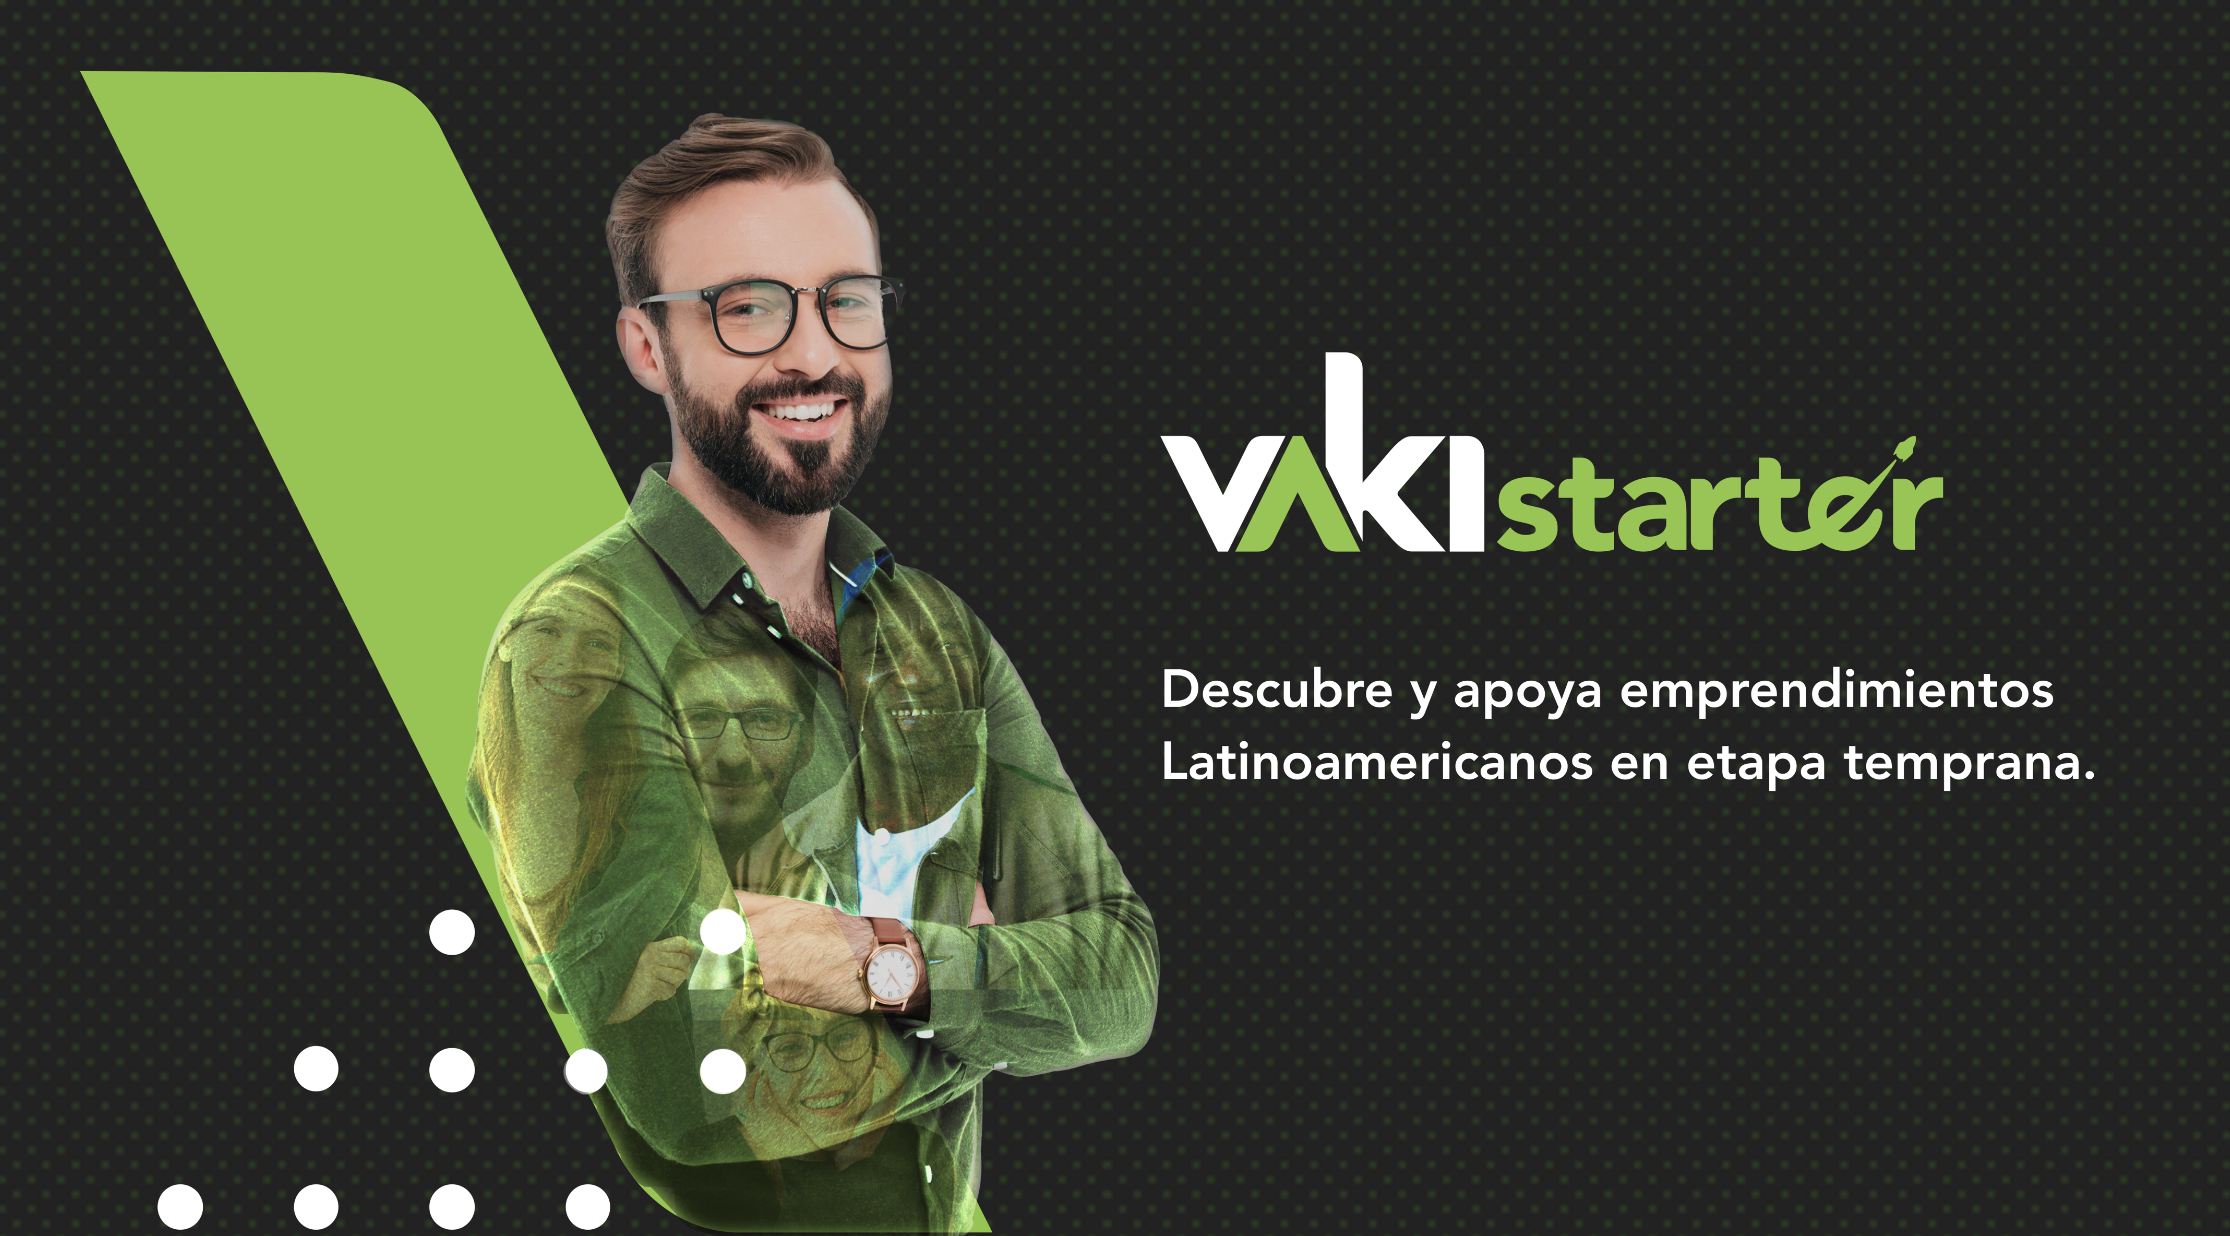 Vaki lanza Vaki starter, una nueva forma de financiar emprendimientos en Colombia que le apuesta al 